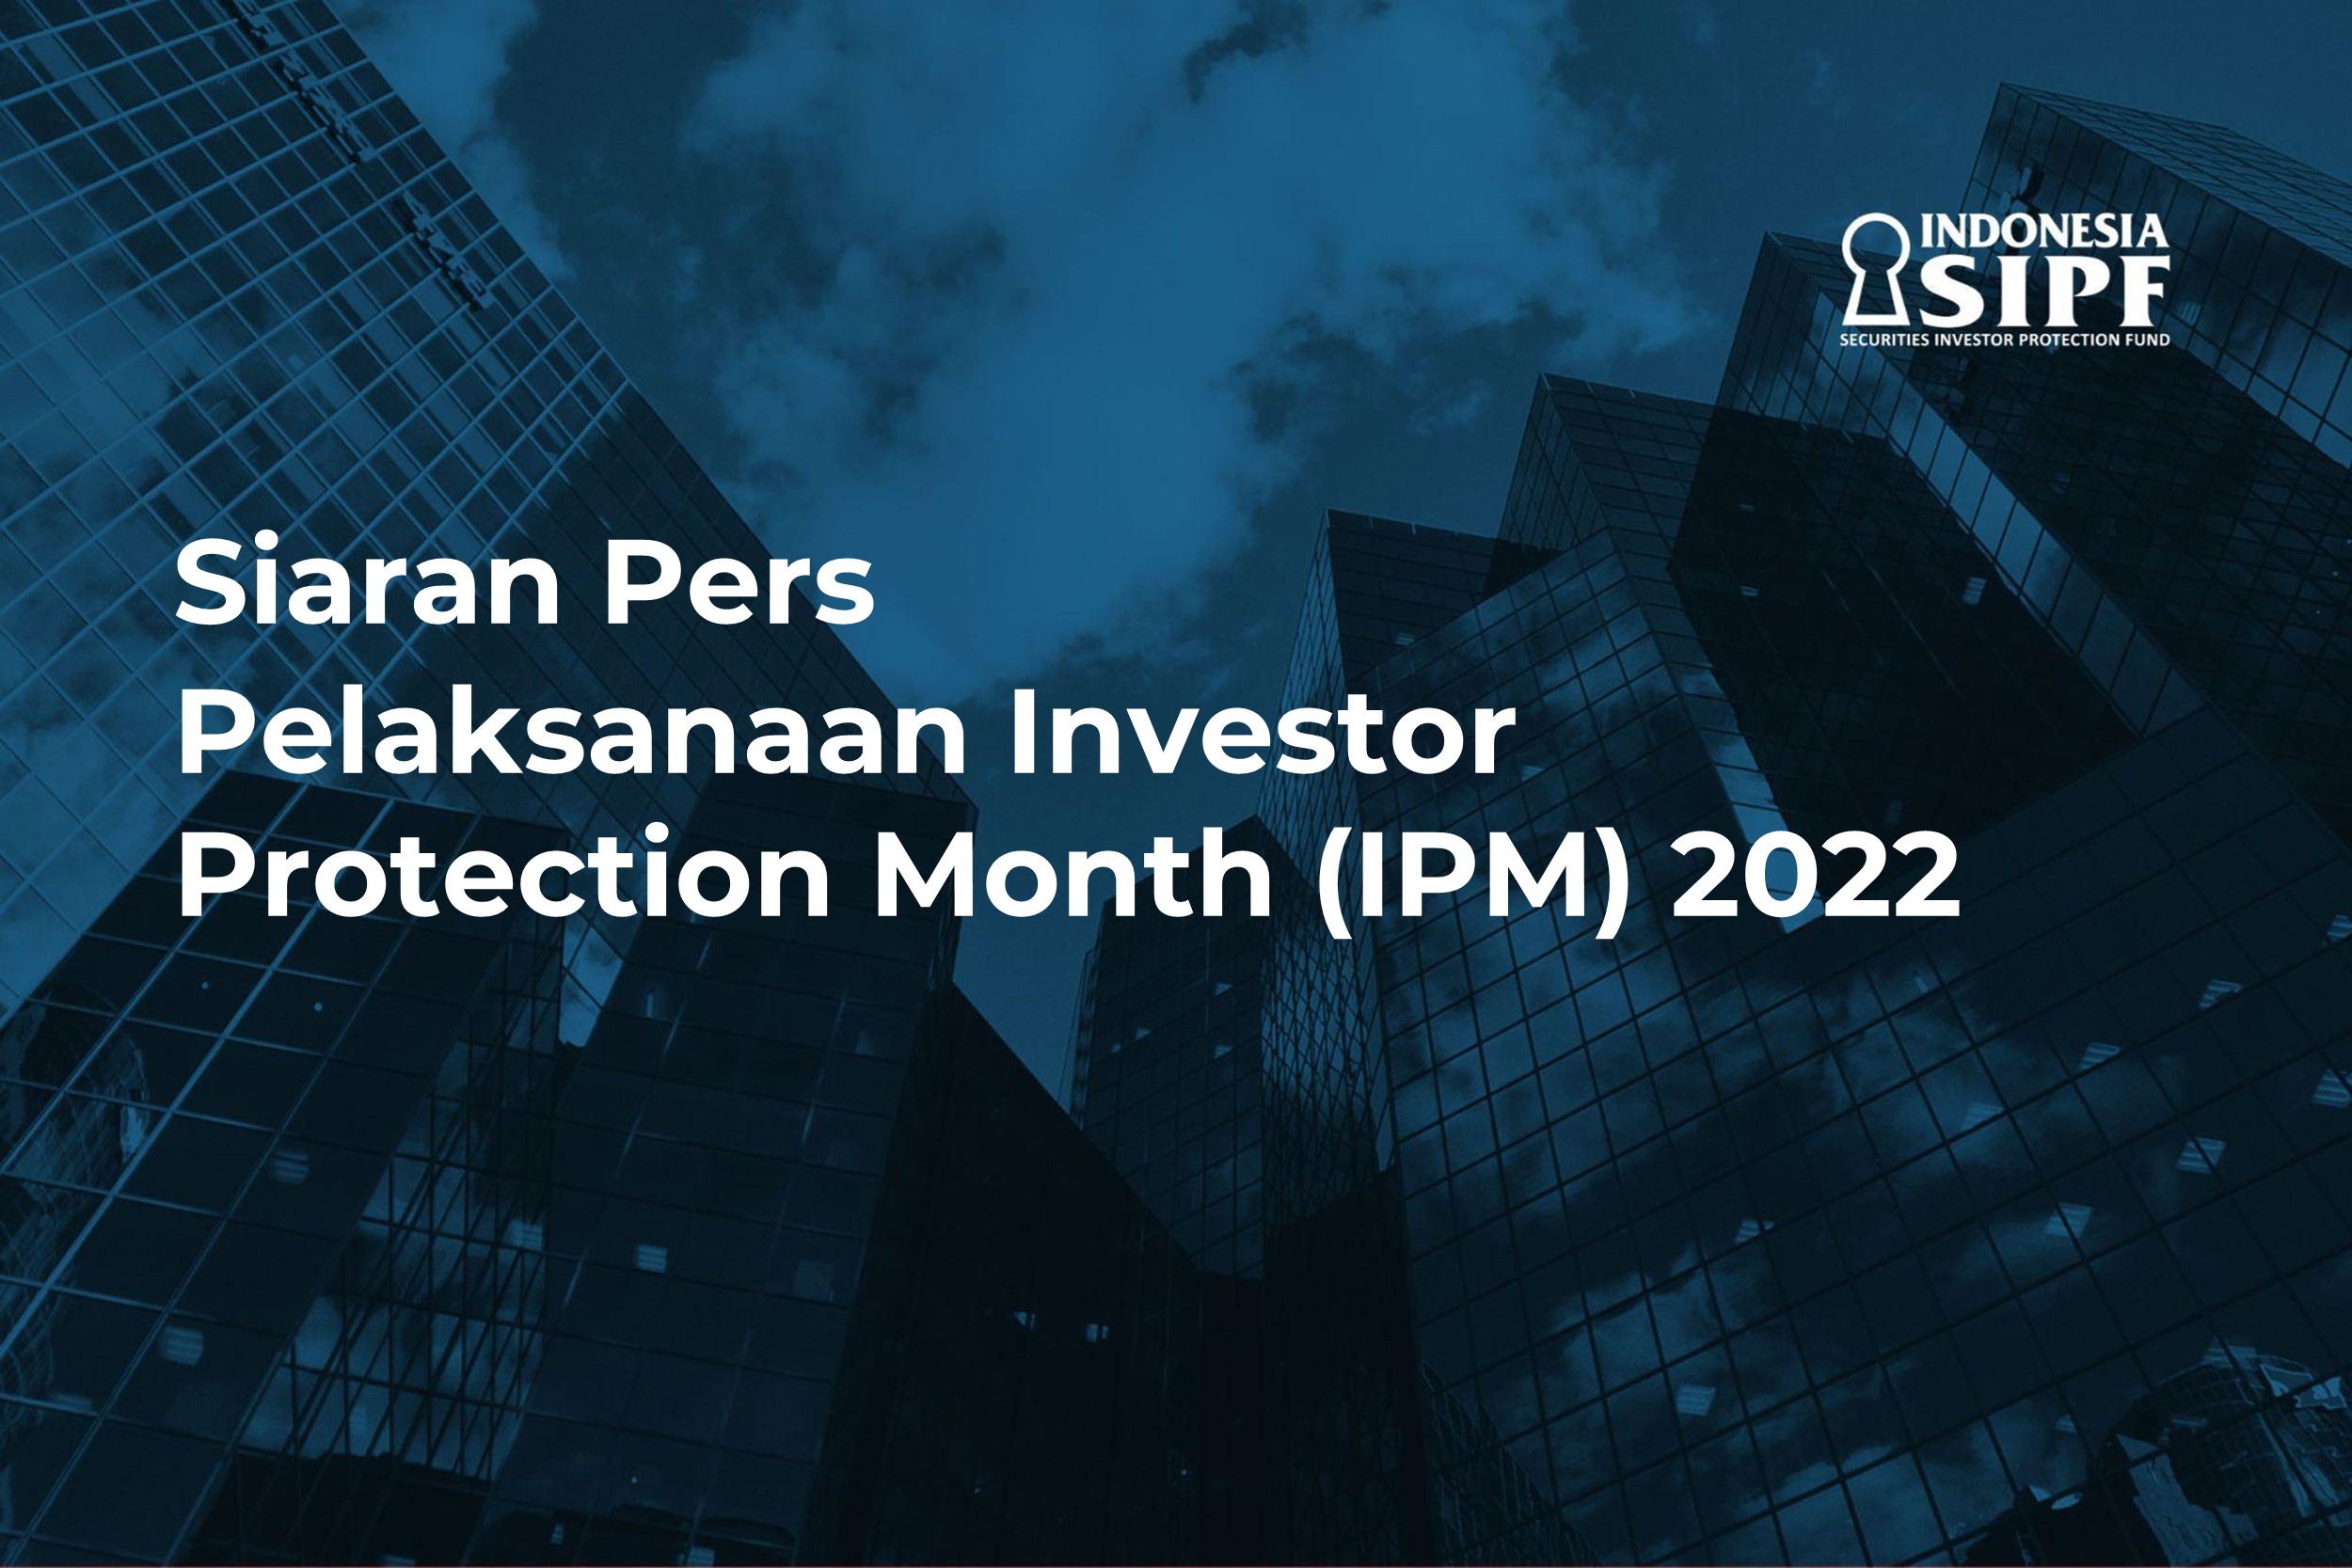 Siaran Pers - Pelaksanaan Investor Protection Month (IPM) 2022